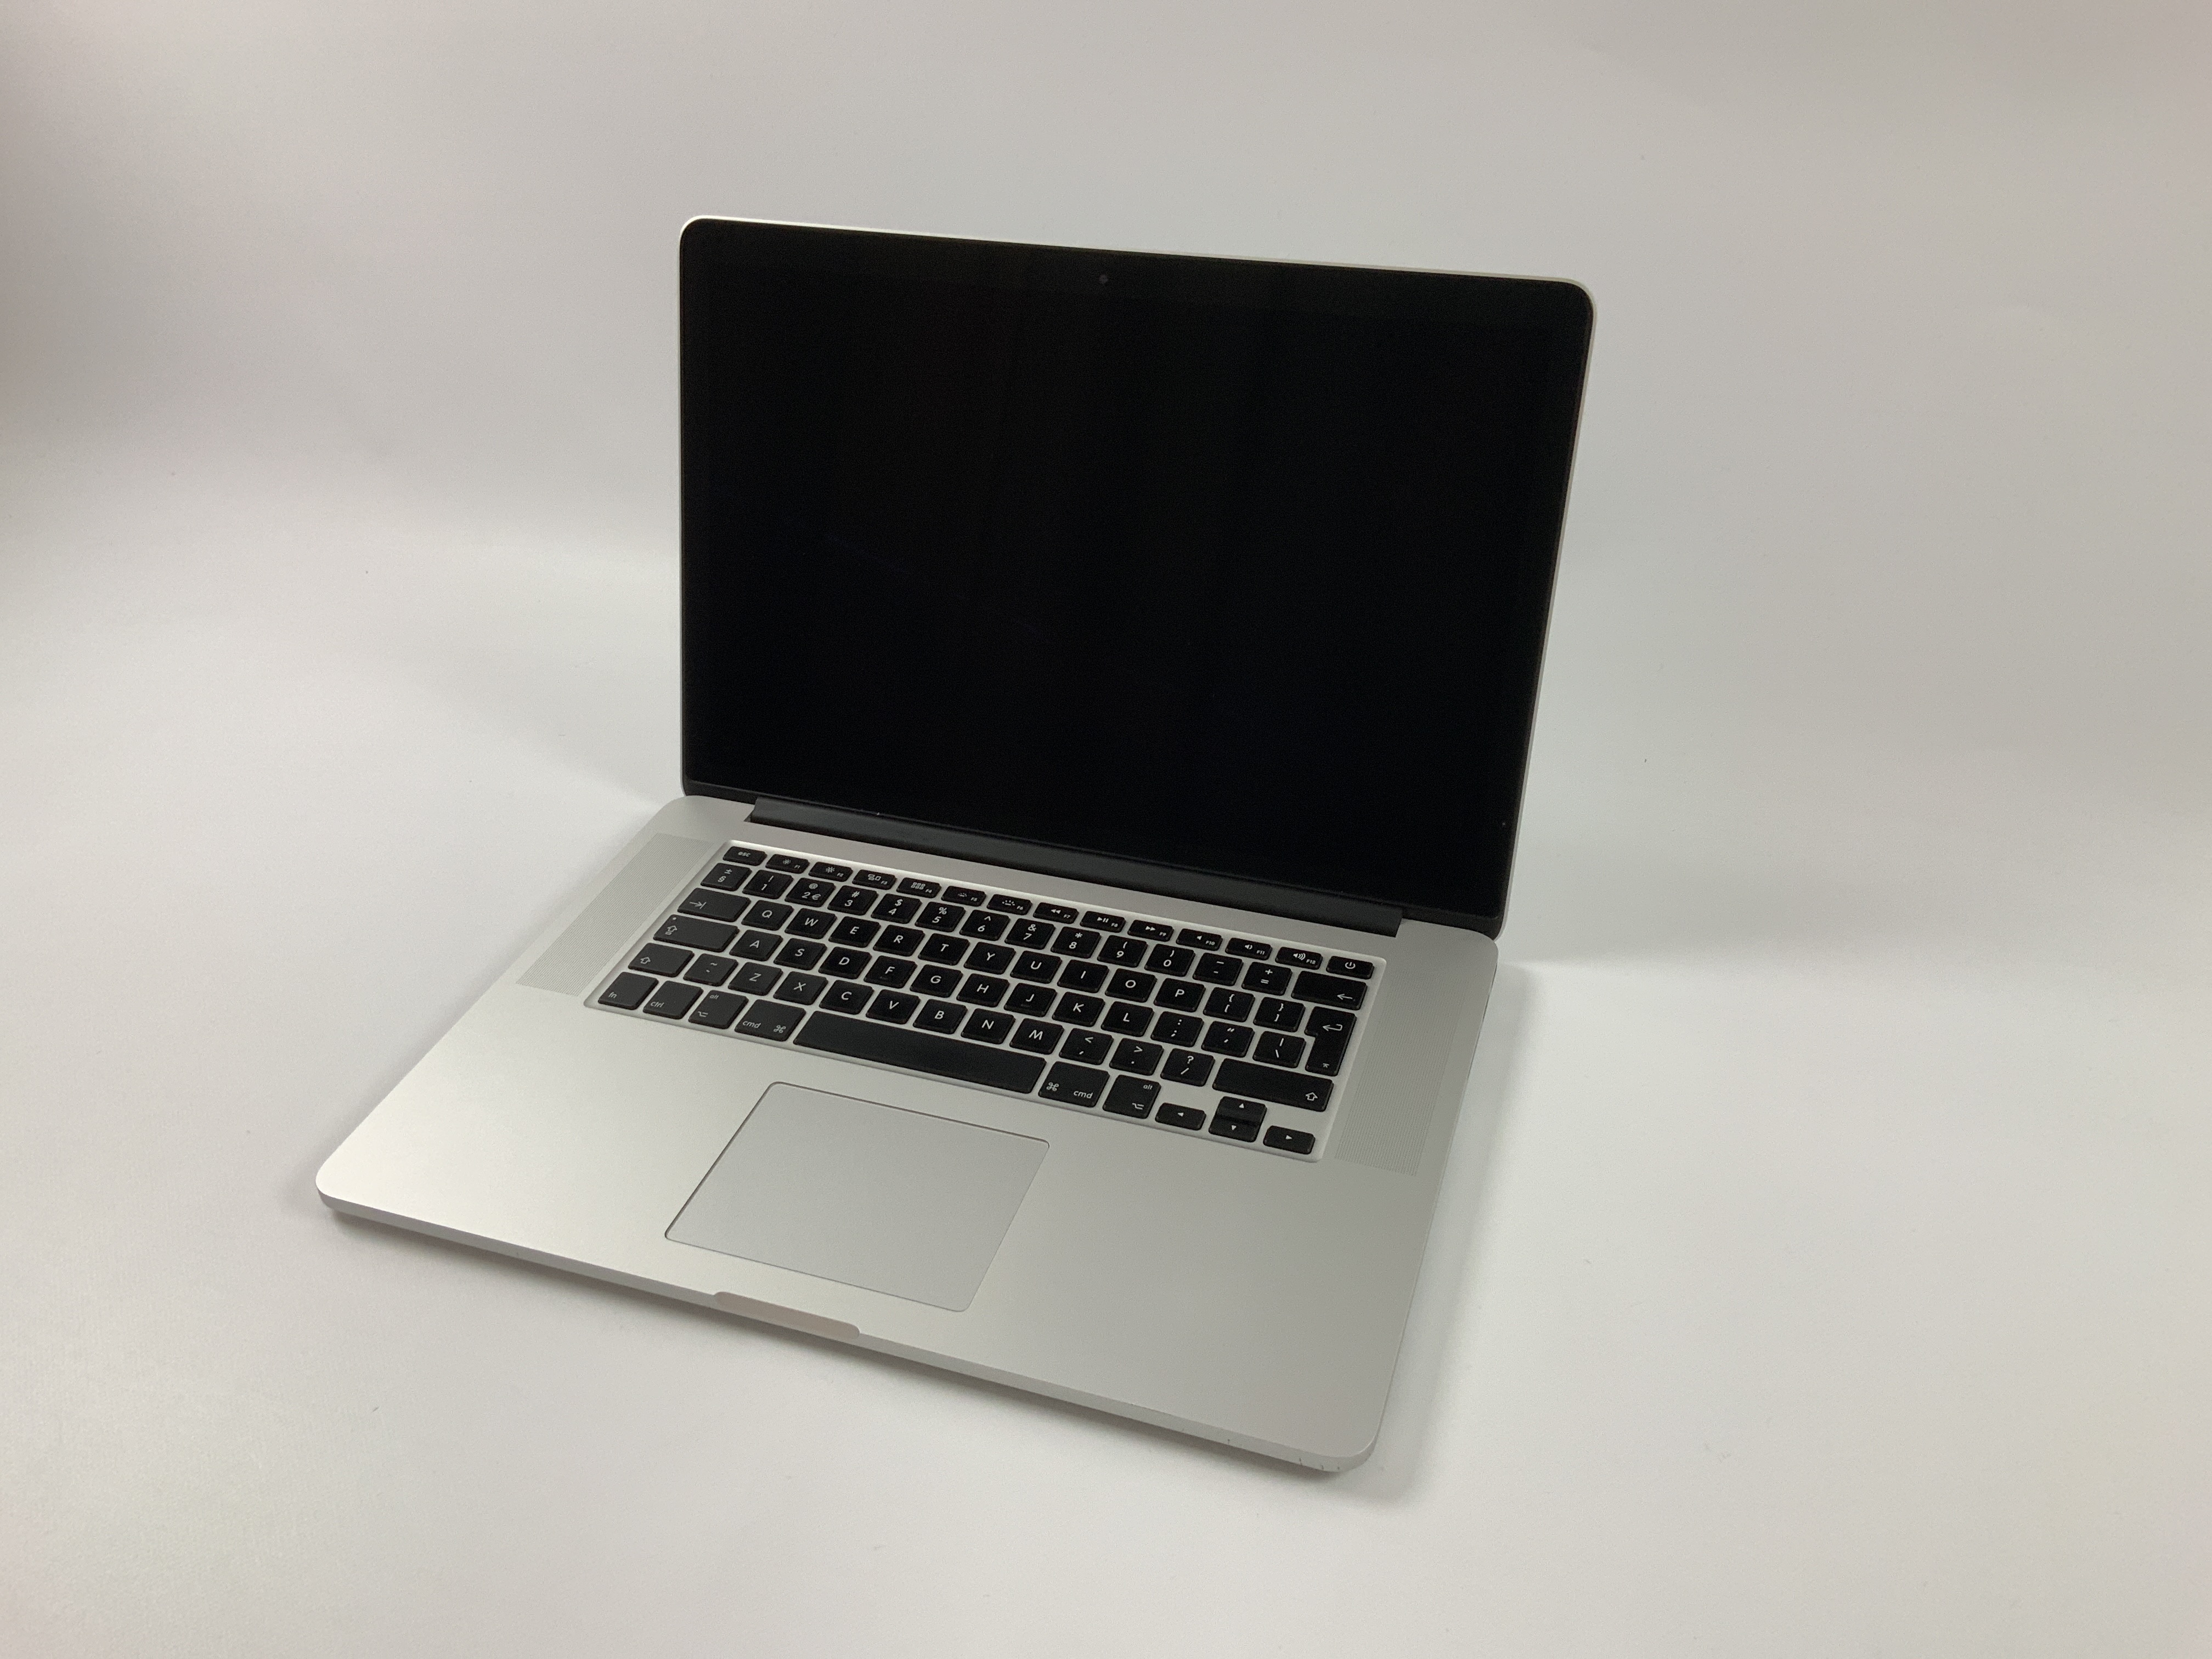 MacBook Pro Retina 15" Mid 2015 (Intel Quad-Core i7 2.5 GHz 16 GB RAM 256 GB SSD), Intel Quad-Core i7 2.5 GHz, 16 GB RAM, 256 GB SSD, Afbeelding 1